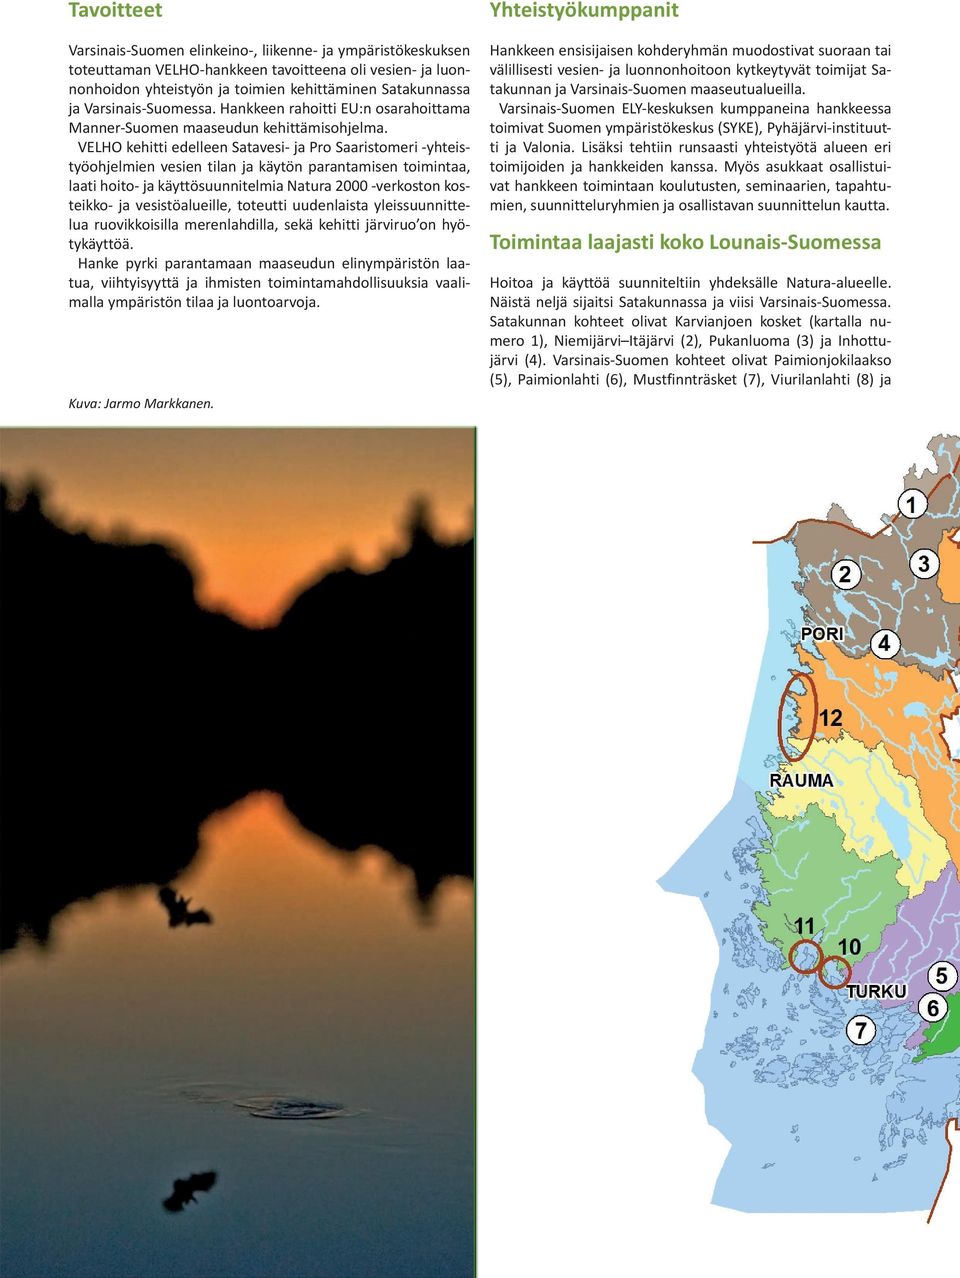 VELHO kehitti edelleen Satavesi- ja Pro Saaristomeri -yhteistyöohjelmien vesien tilan ja käytön parantamisen toimintaa, laati hoito- ja käyttösuunnitelmia Natura 2000 -verkoston kosteikko- ja